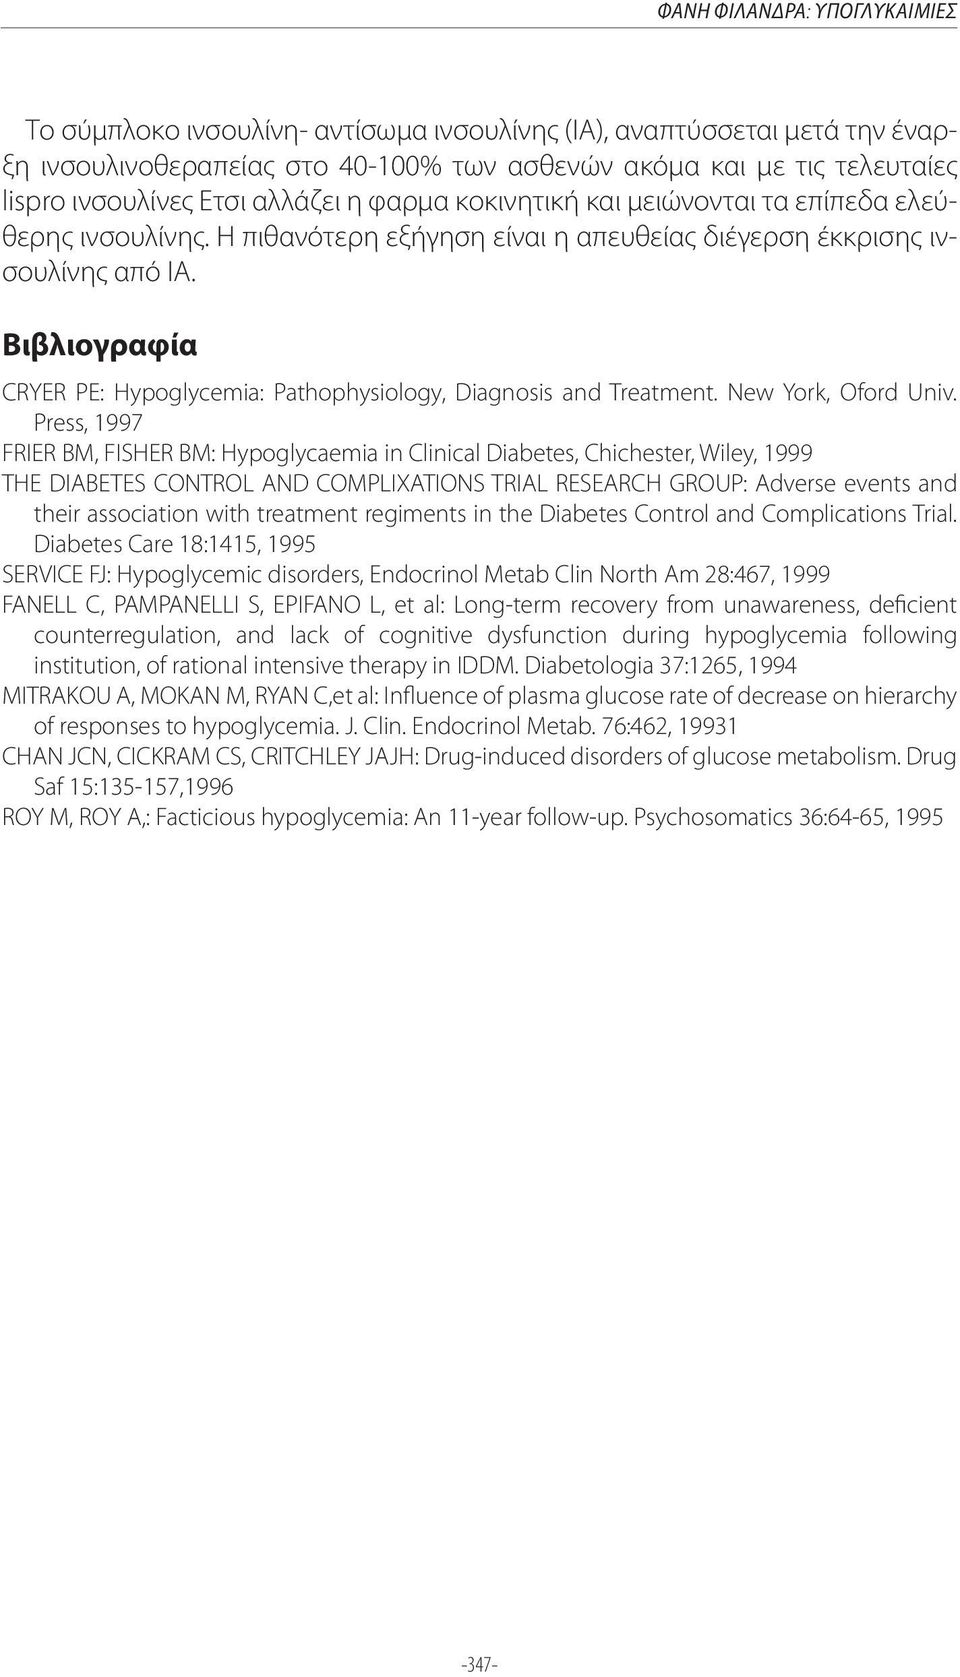 Βιβλιογραφία CRYER PE: Hypoglycemia: Pathophysiology, Diagnosis and Treatment. New York, Oford Univ.